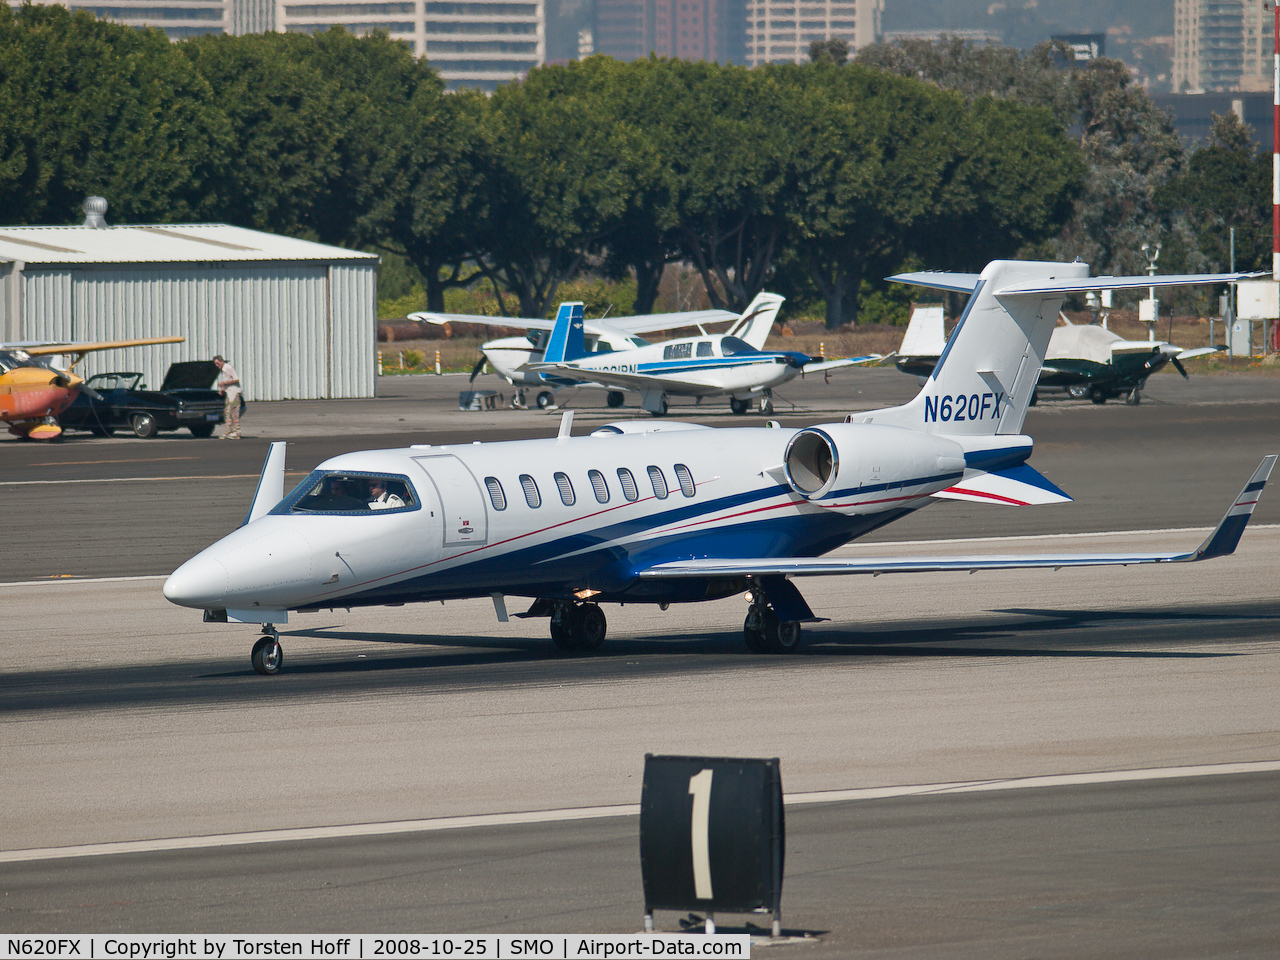 N620FX, 2007 Learjet Inc 45 C/N 2085, N620FX departing from RWY 21